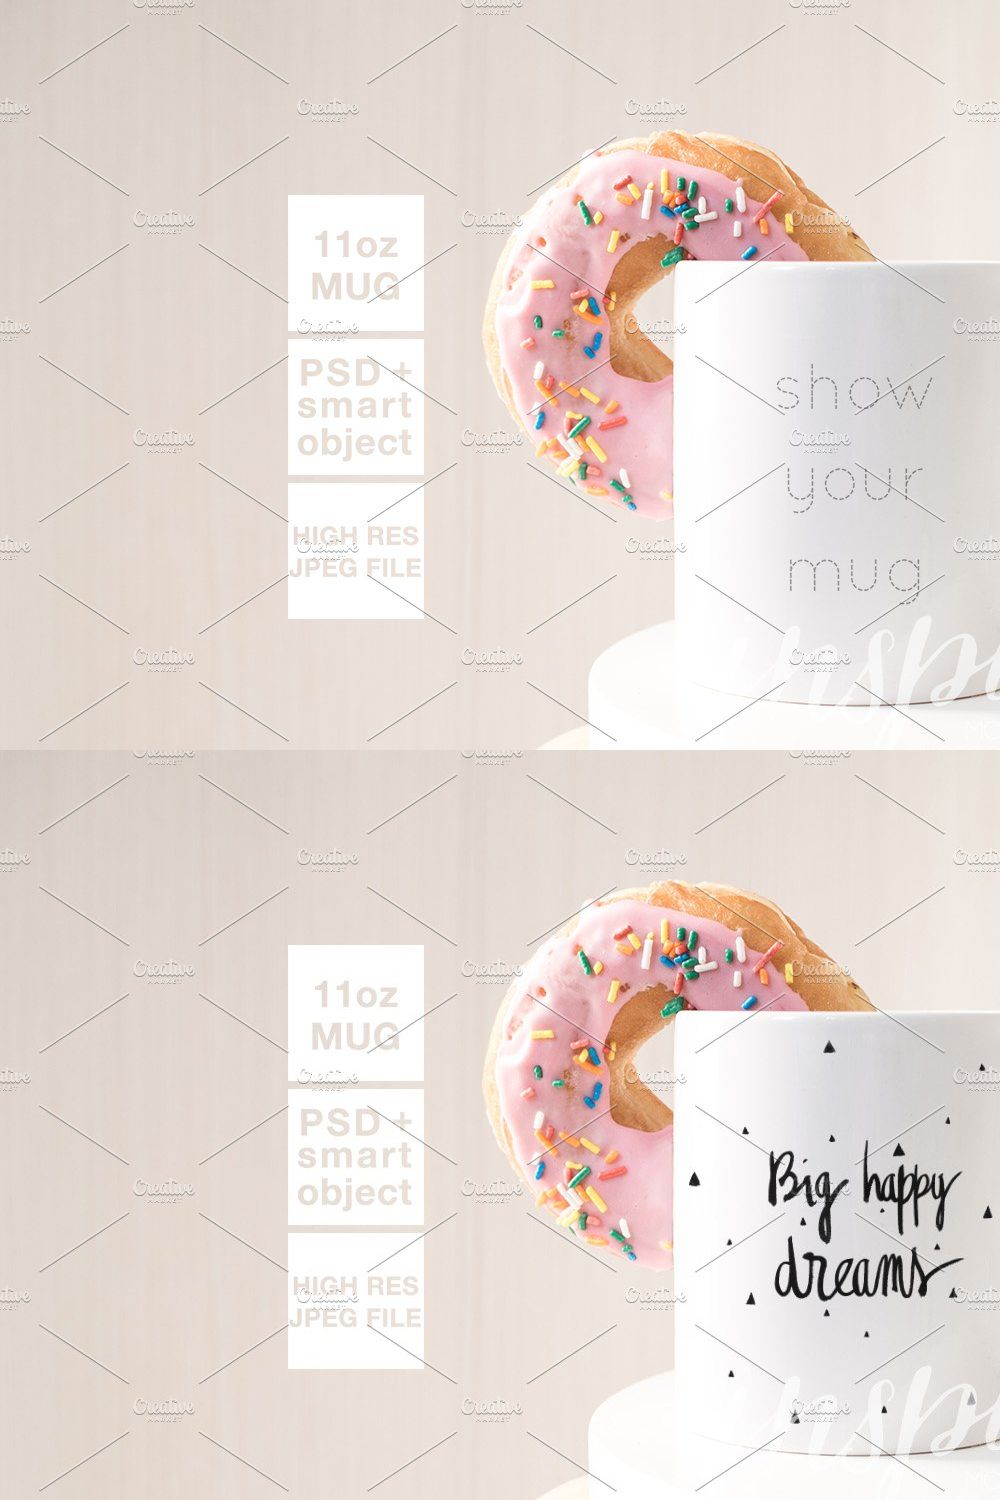 11oz Ceramic Mug Mockup + Donut PSD pinterest preview image.